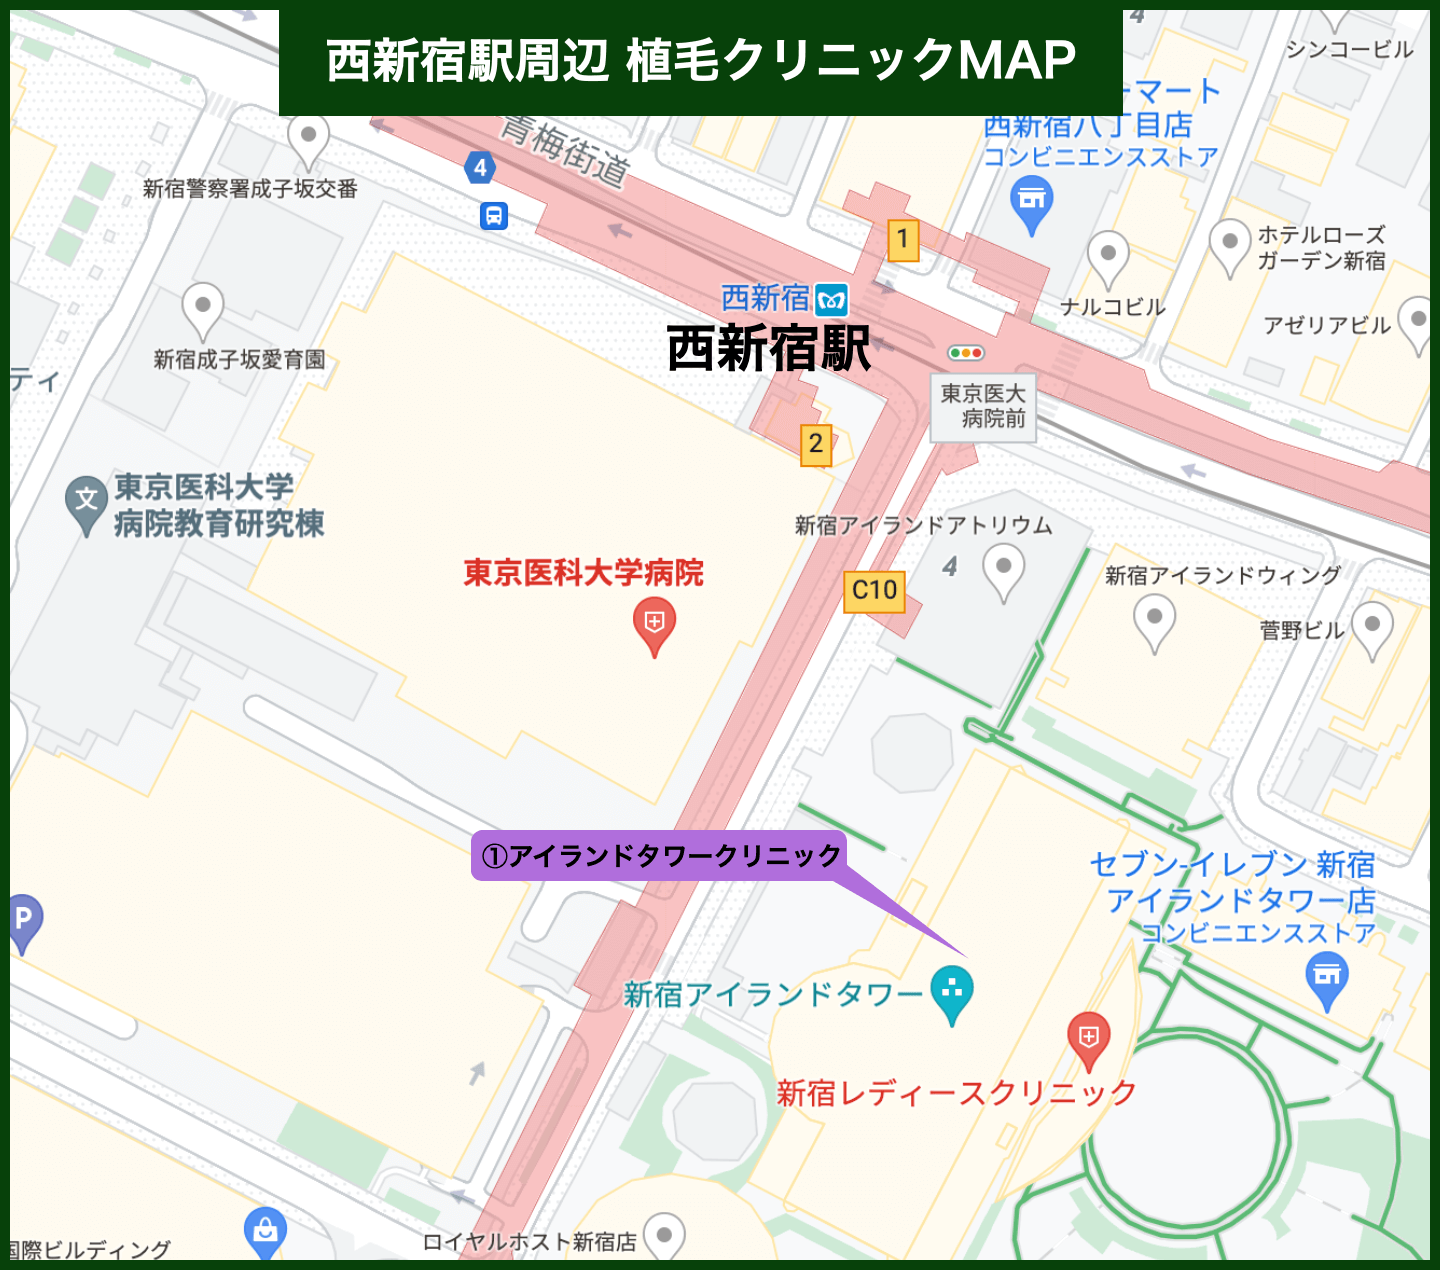 西新宿駅周辺植毛クリニックMAP